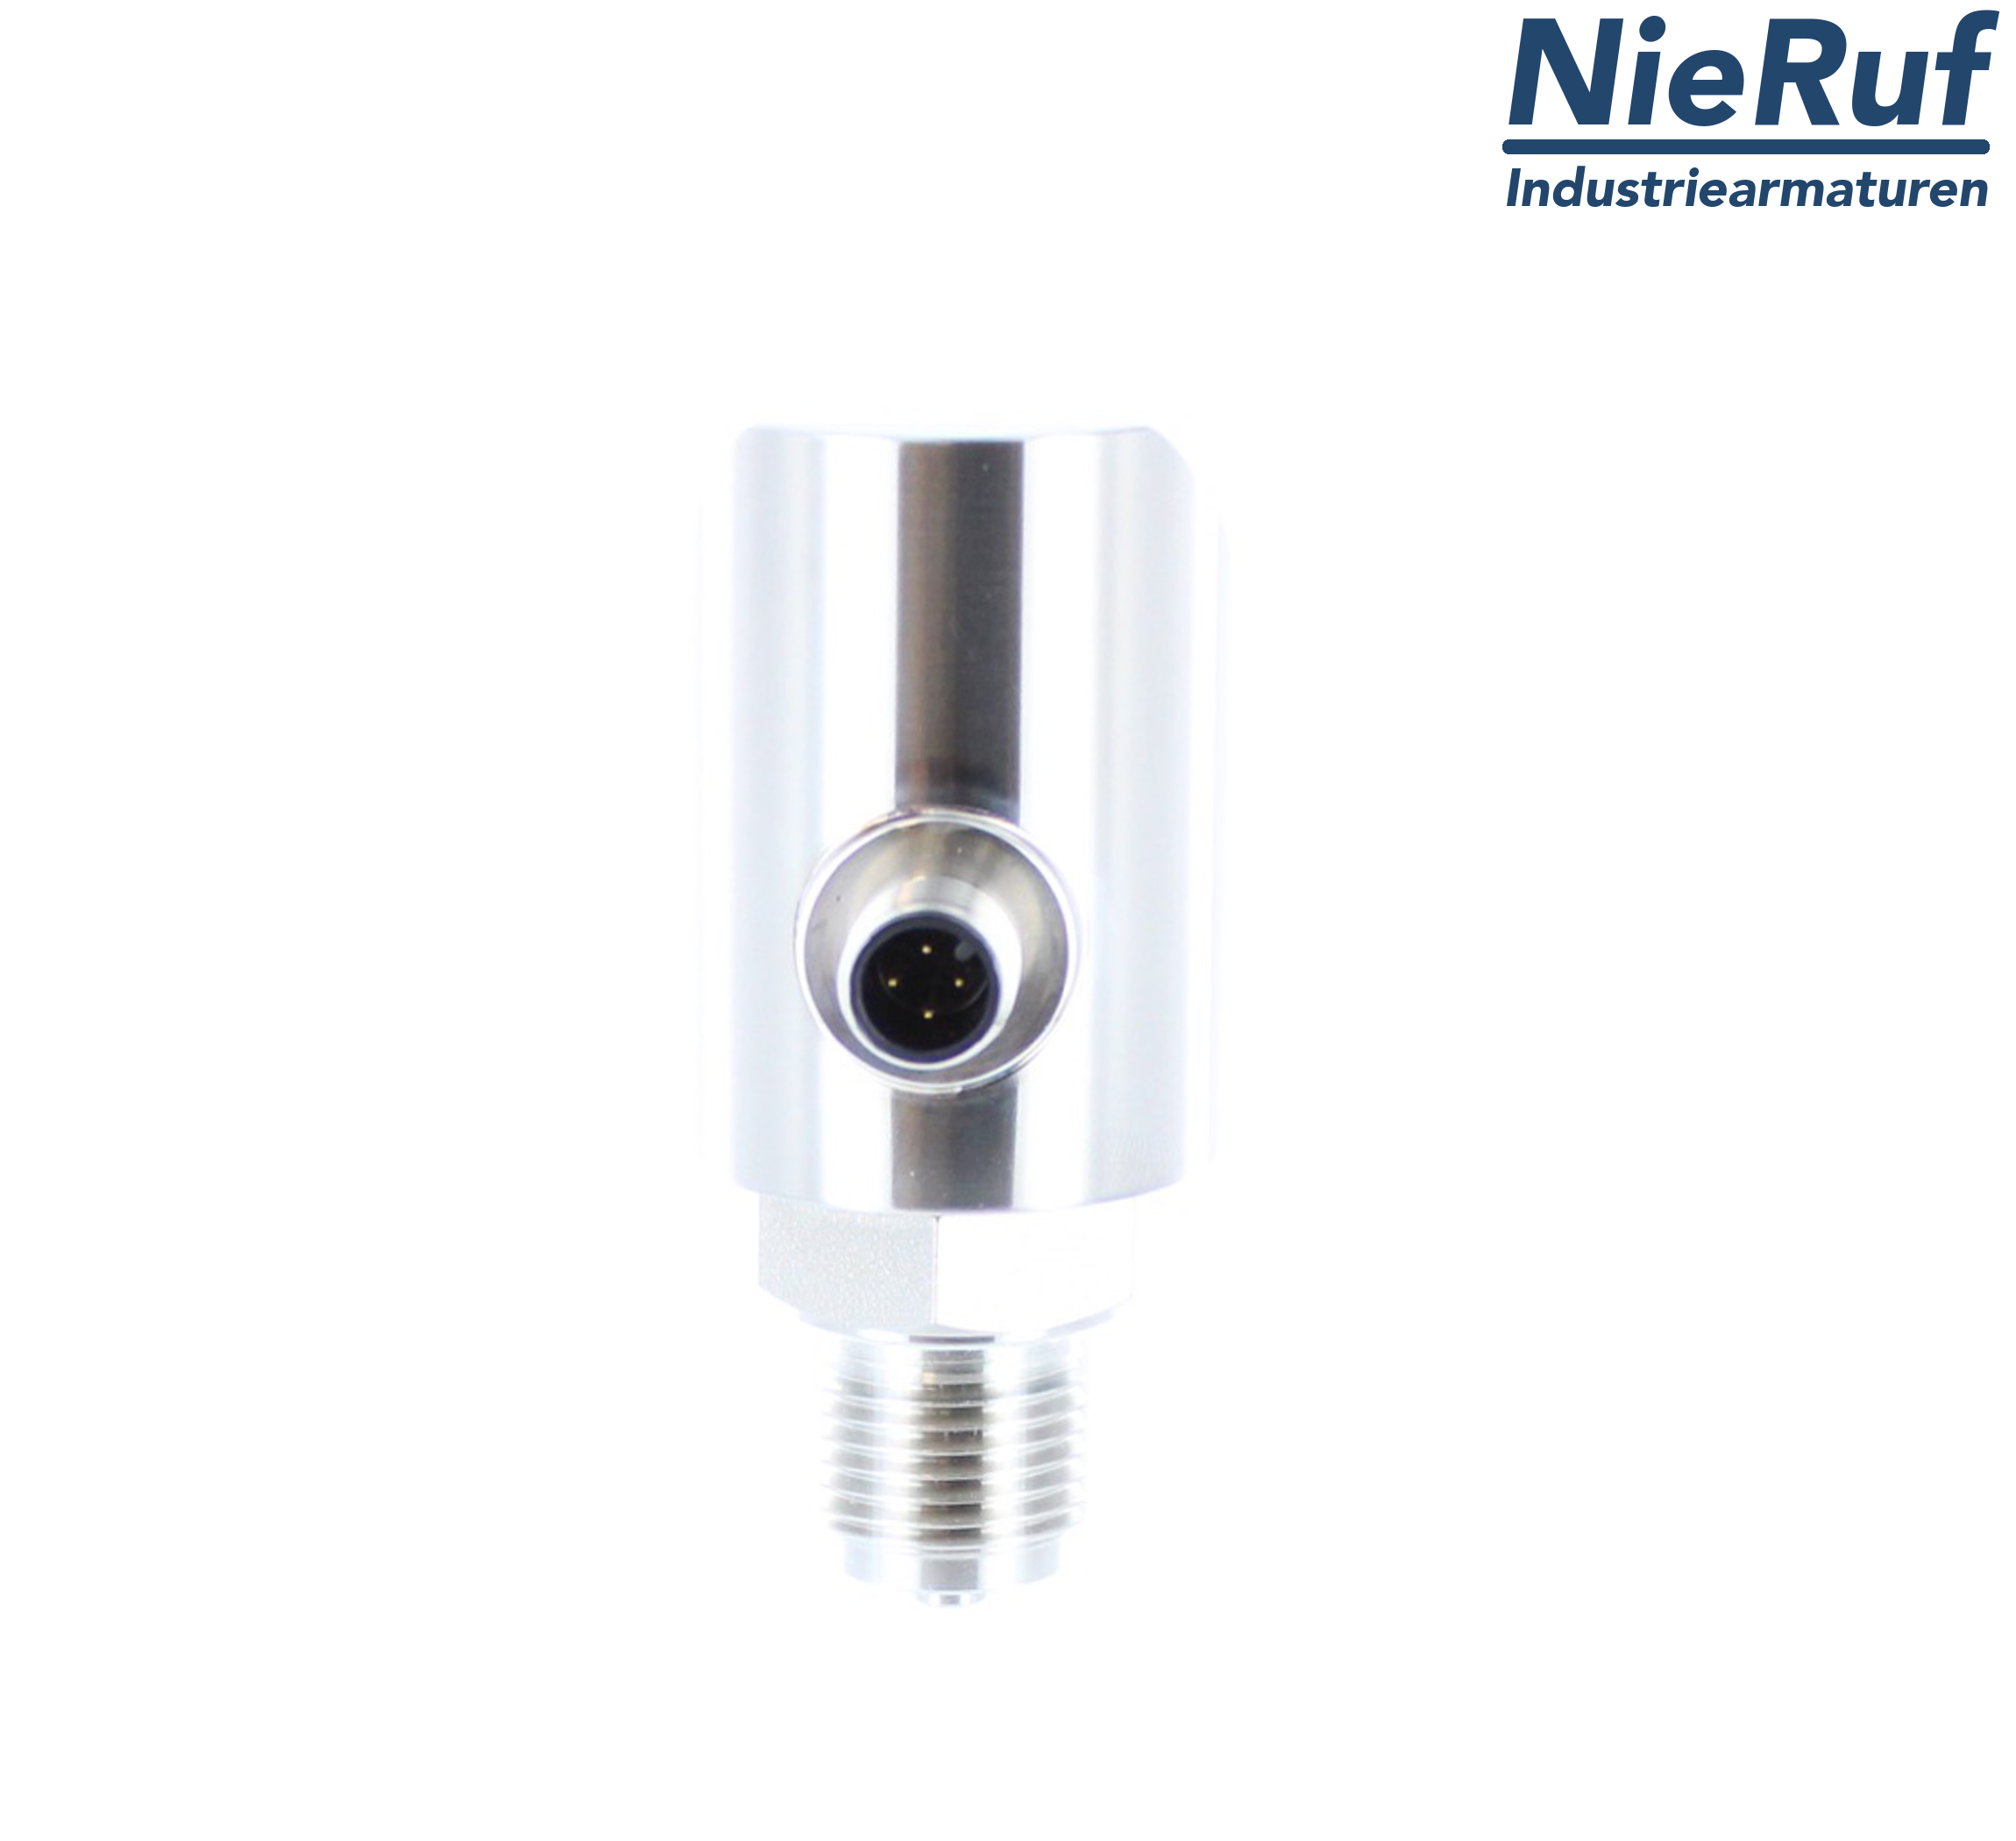 digital pressure sensor G 1/4" B 5-wire: 2xPNP, 1x4 - 20mA FPM 0,0 - 60,0 bar